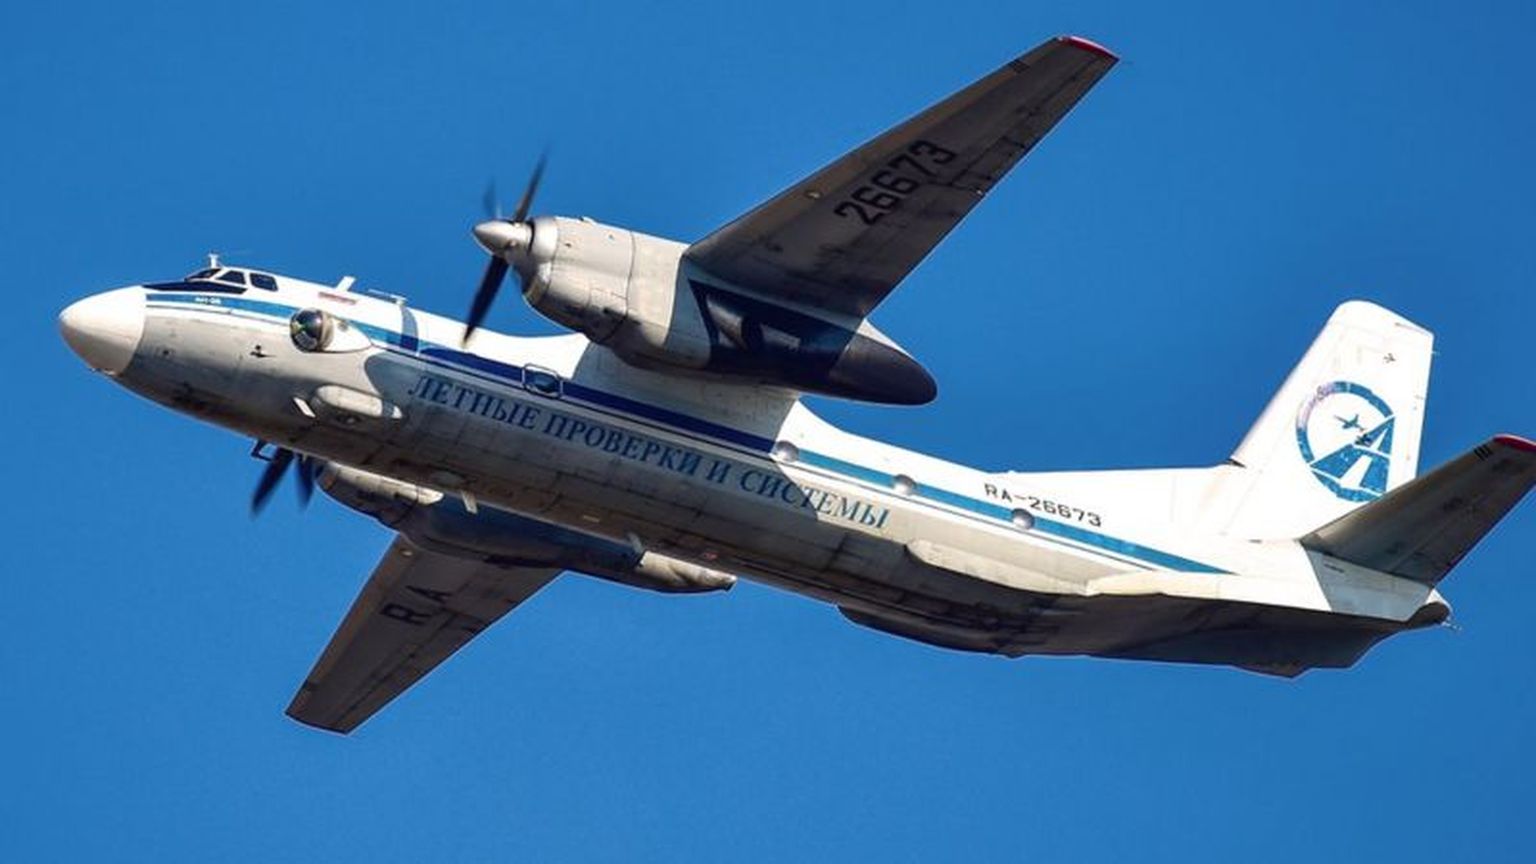 Воздушное судно, по предварительным данным, принадлежит ЗАО "Летные проверки и системы" (архивное фото).